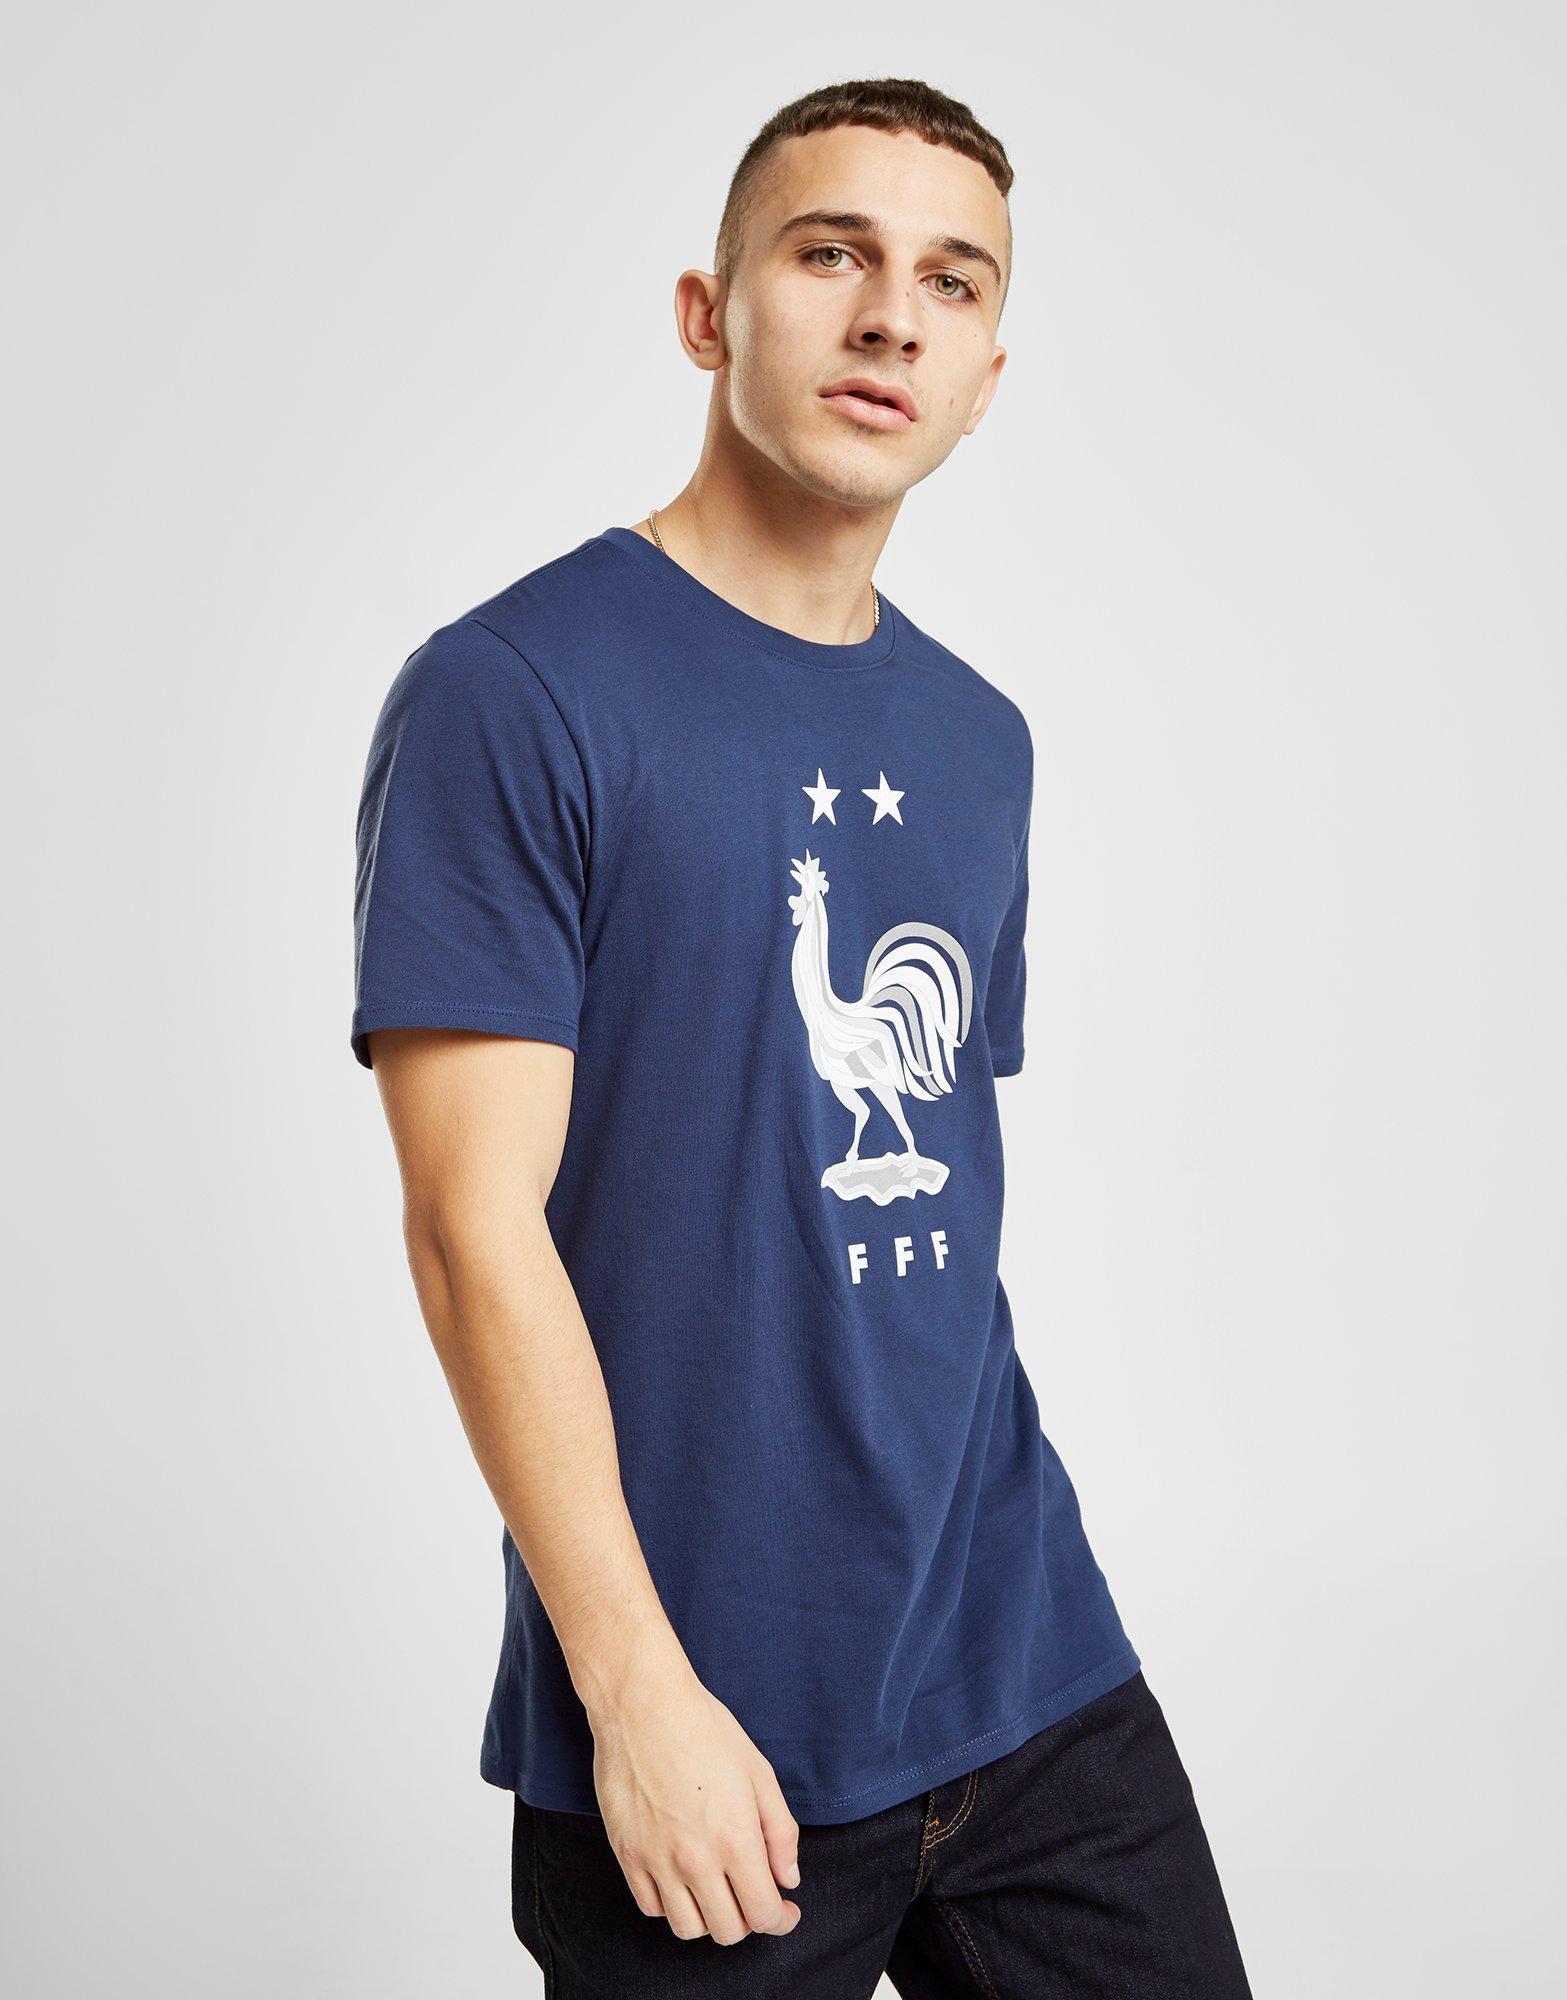 Nike Cotton France 2-star Short Sleeve T-shirt in Blue/White (Blue) for Men  - Lyst